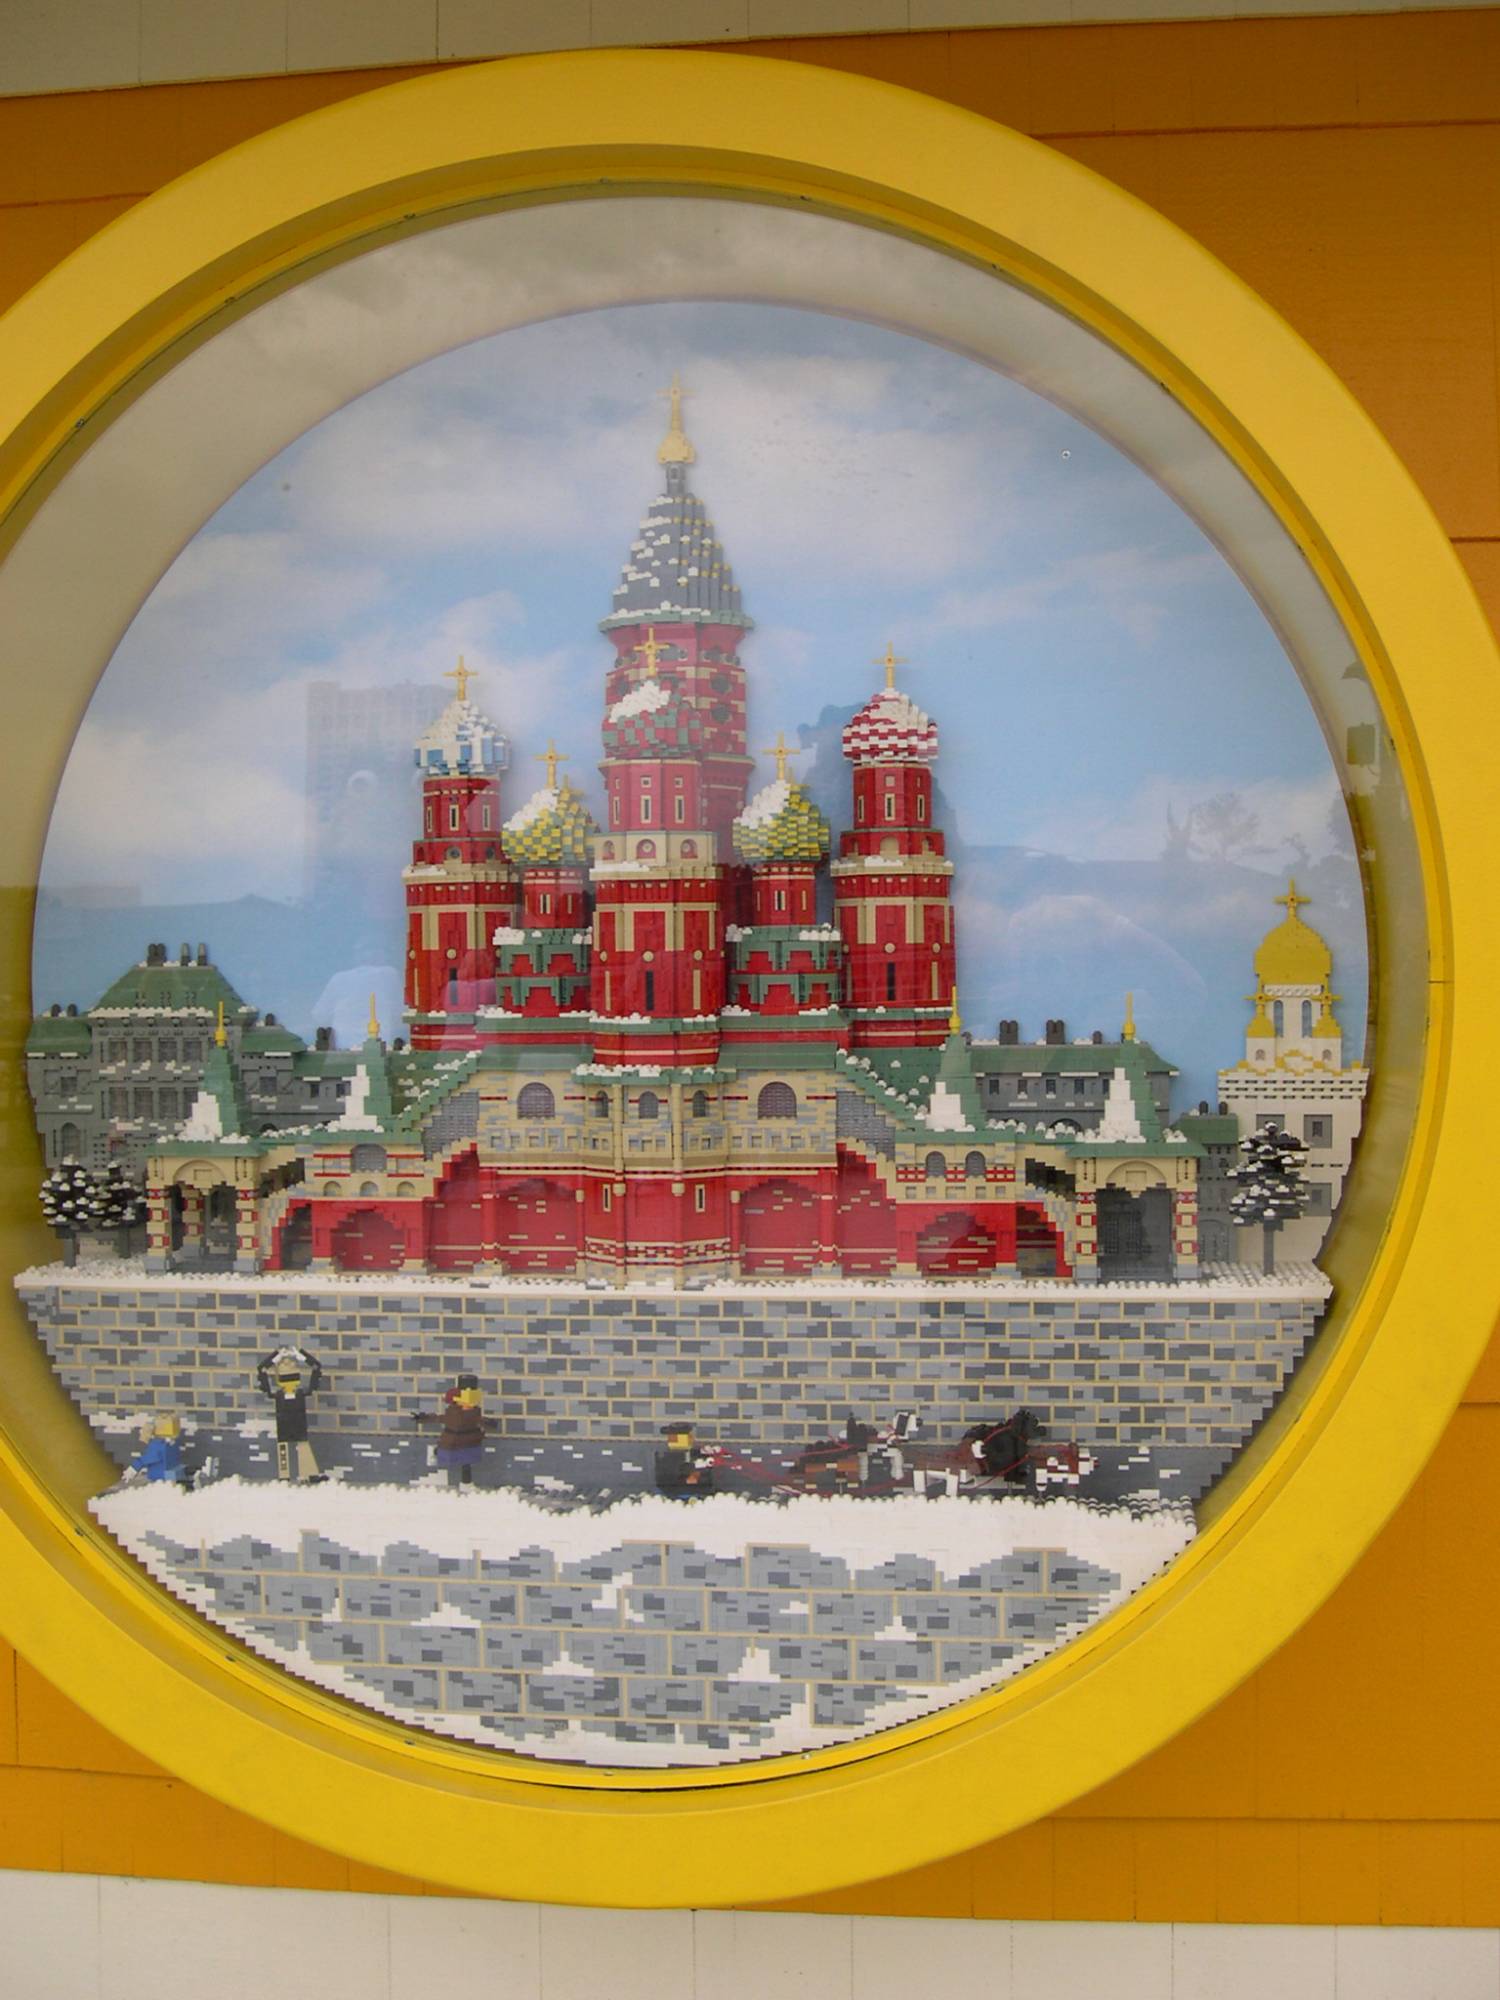 Downtown Disney - Lego Store Window